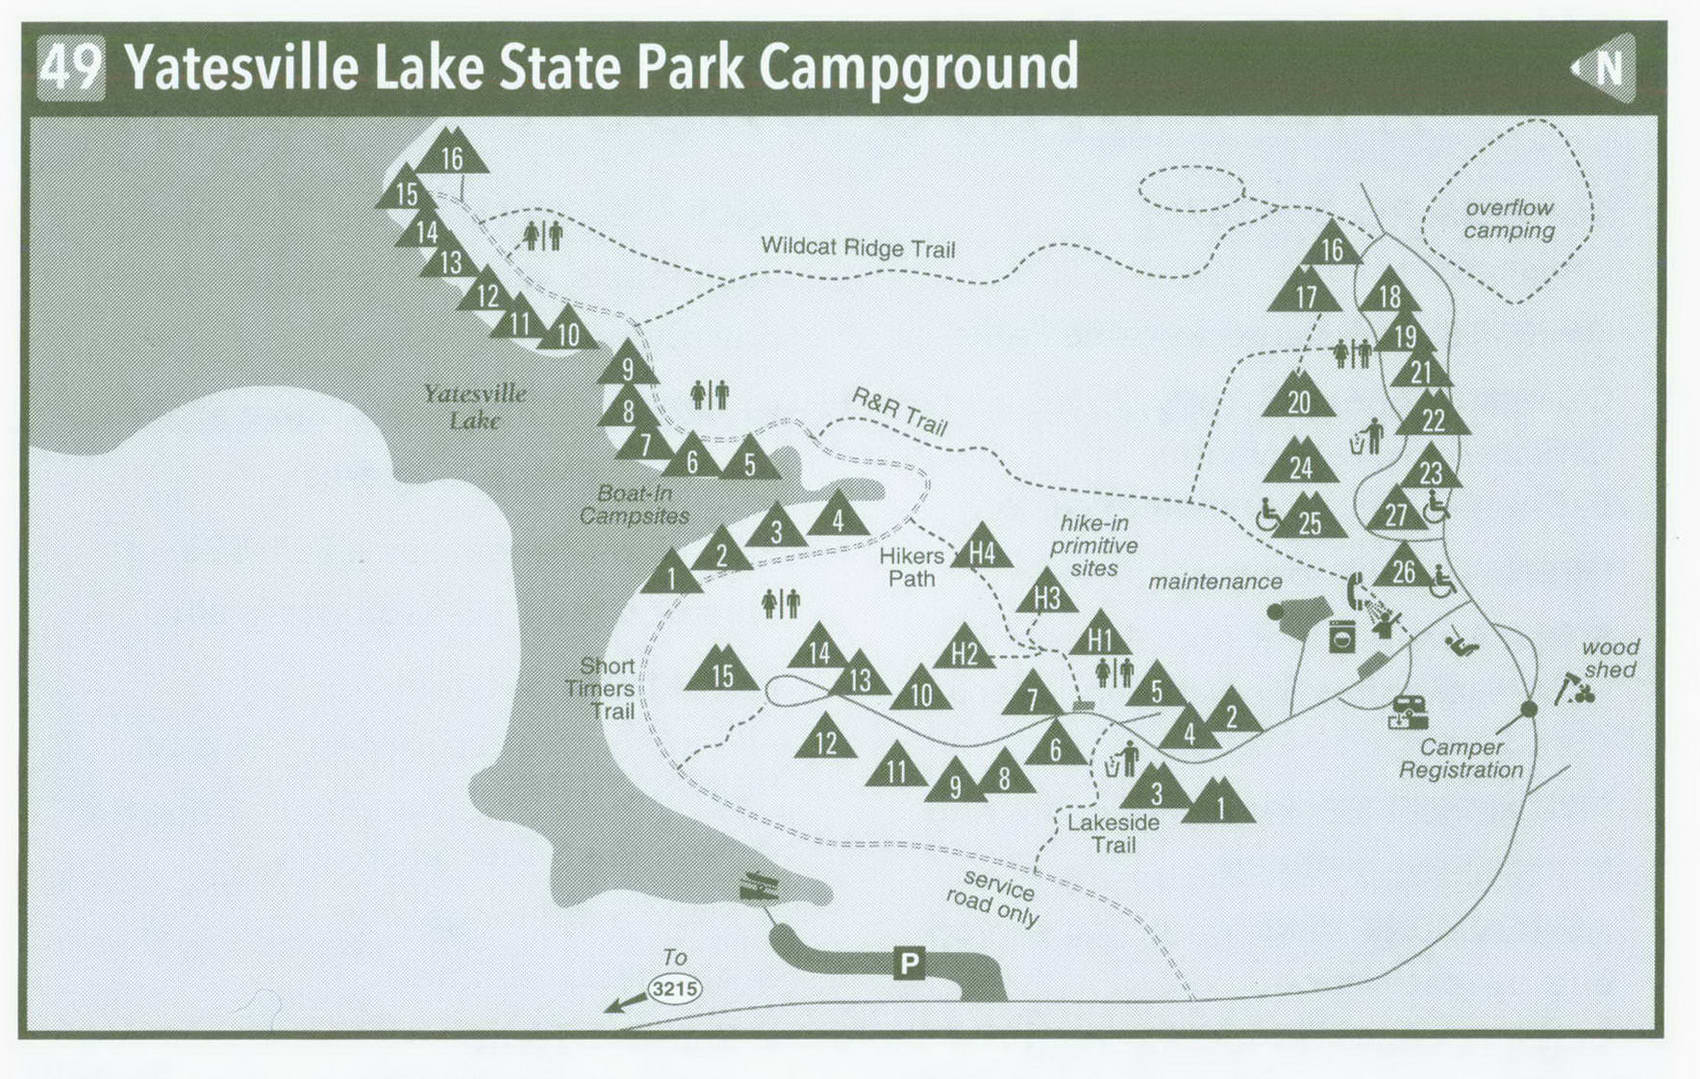 Plan of Yatesville Lake State Park Campground